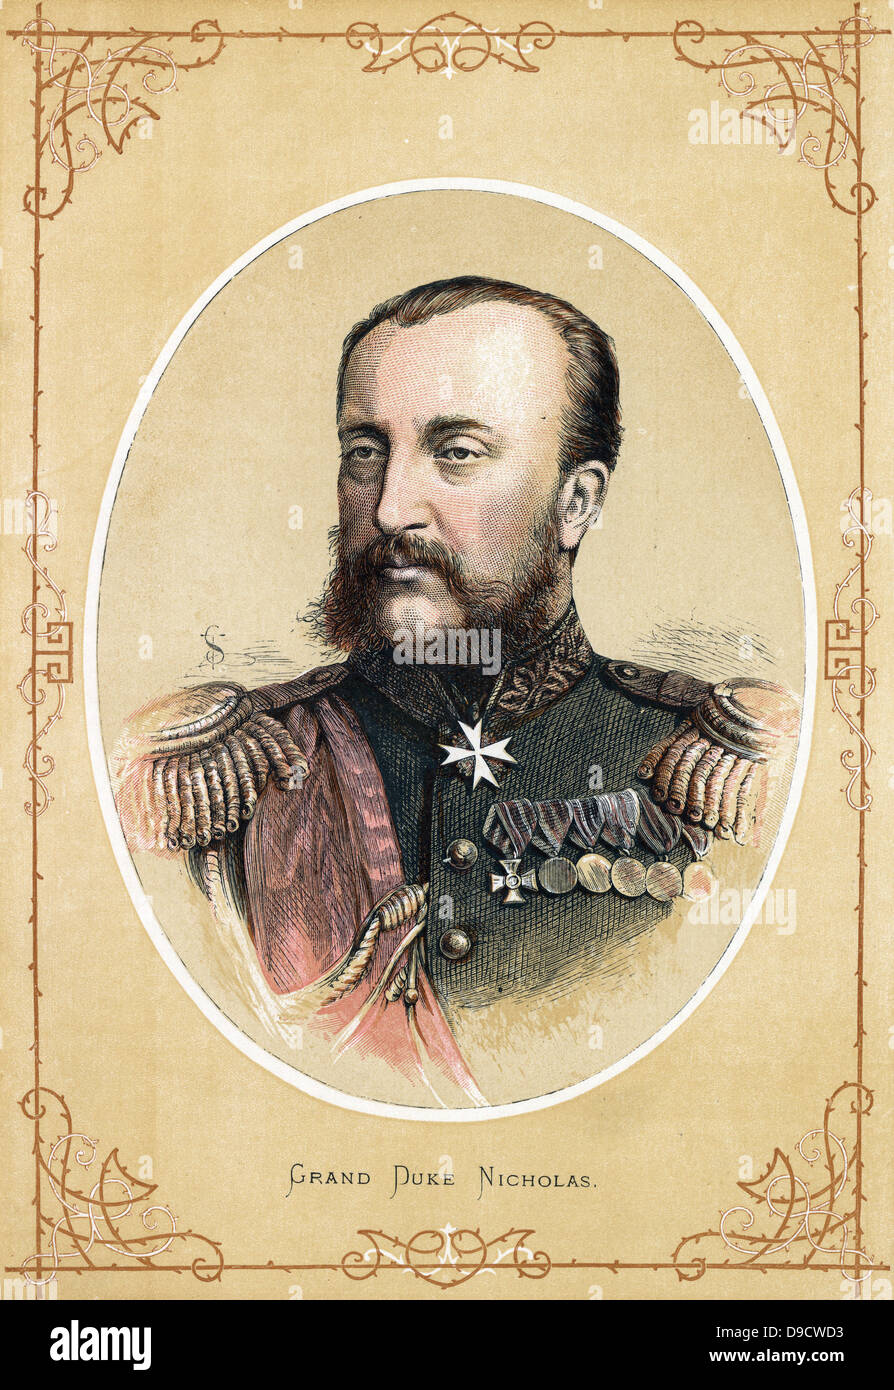 Grand Duke Nicholas Nikolaevich von Russland (1831-1891), russischer General, Bruder des Zaren Alexander II. Farbe gedruckten Holzstich c 1890. Stockfoto